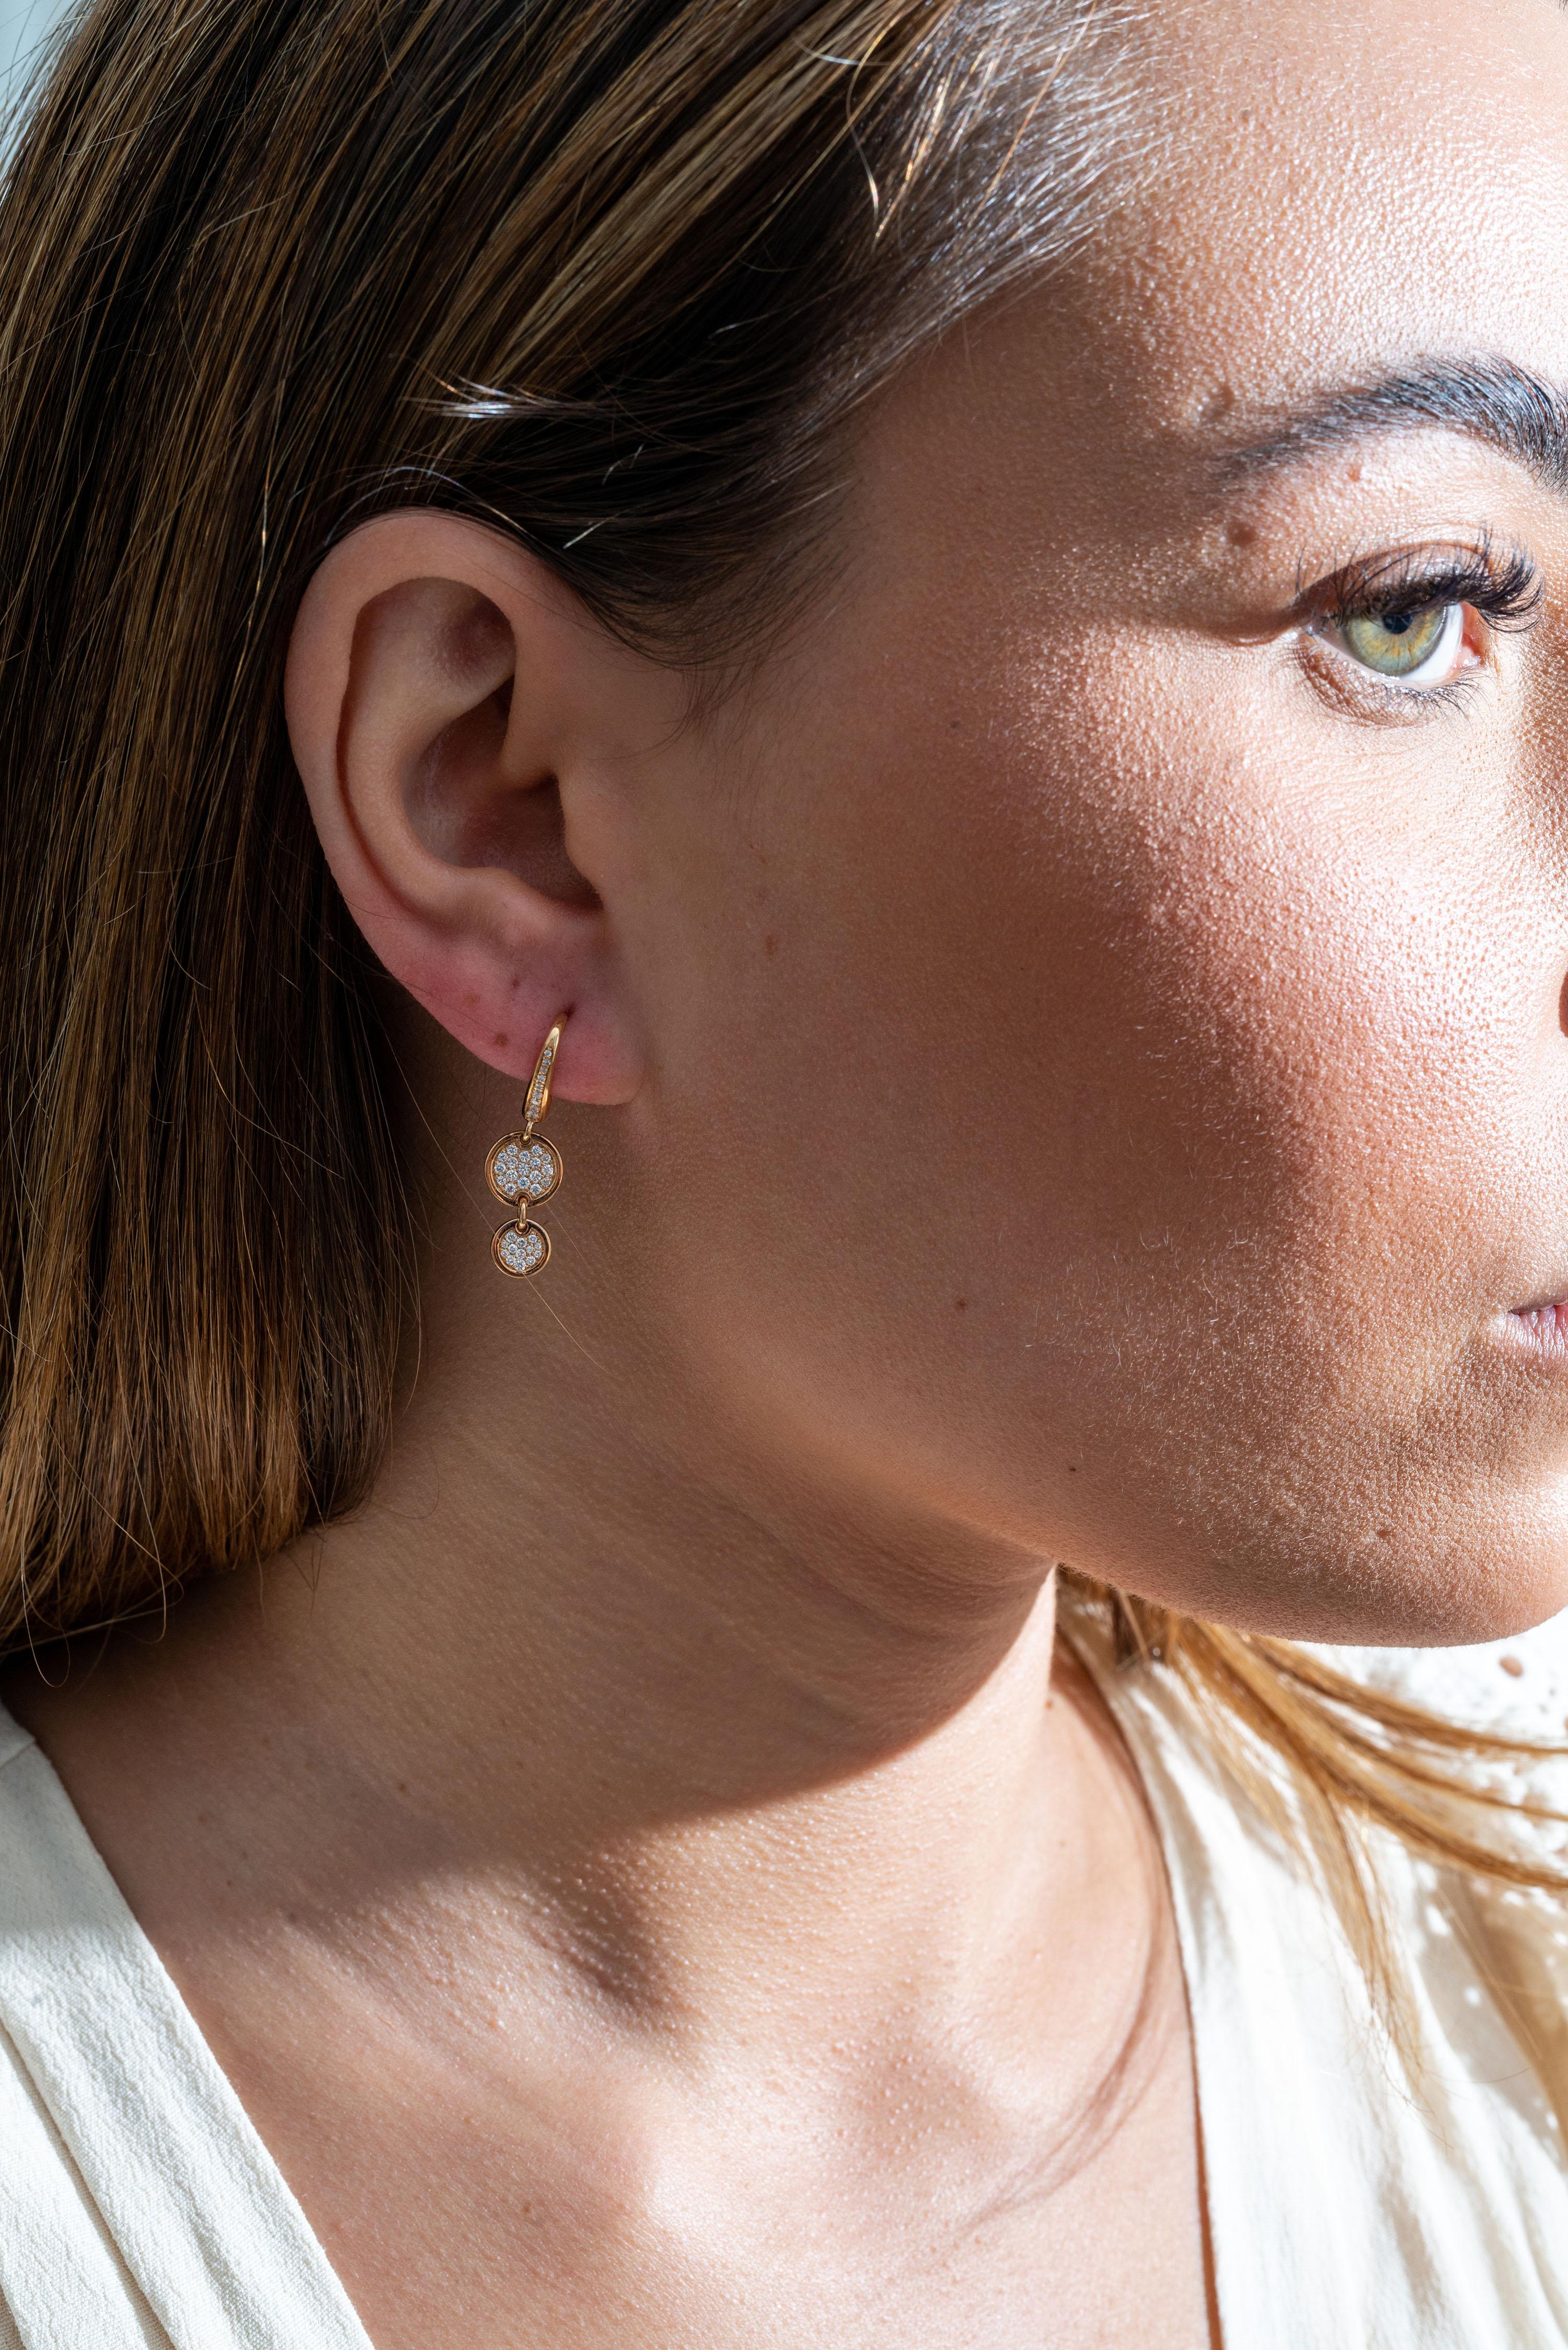 les boucles d'oreilles en or rose 18K sont de la collection Jackpot. Ces élégantes boucles d'oreilles sont composées de 2 cercles ornés chacun de diamants ronds incolores d'une valeur totale de 0,37 carat. Le poids total du métal est de 4,28 gr. Les